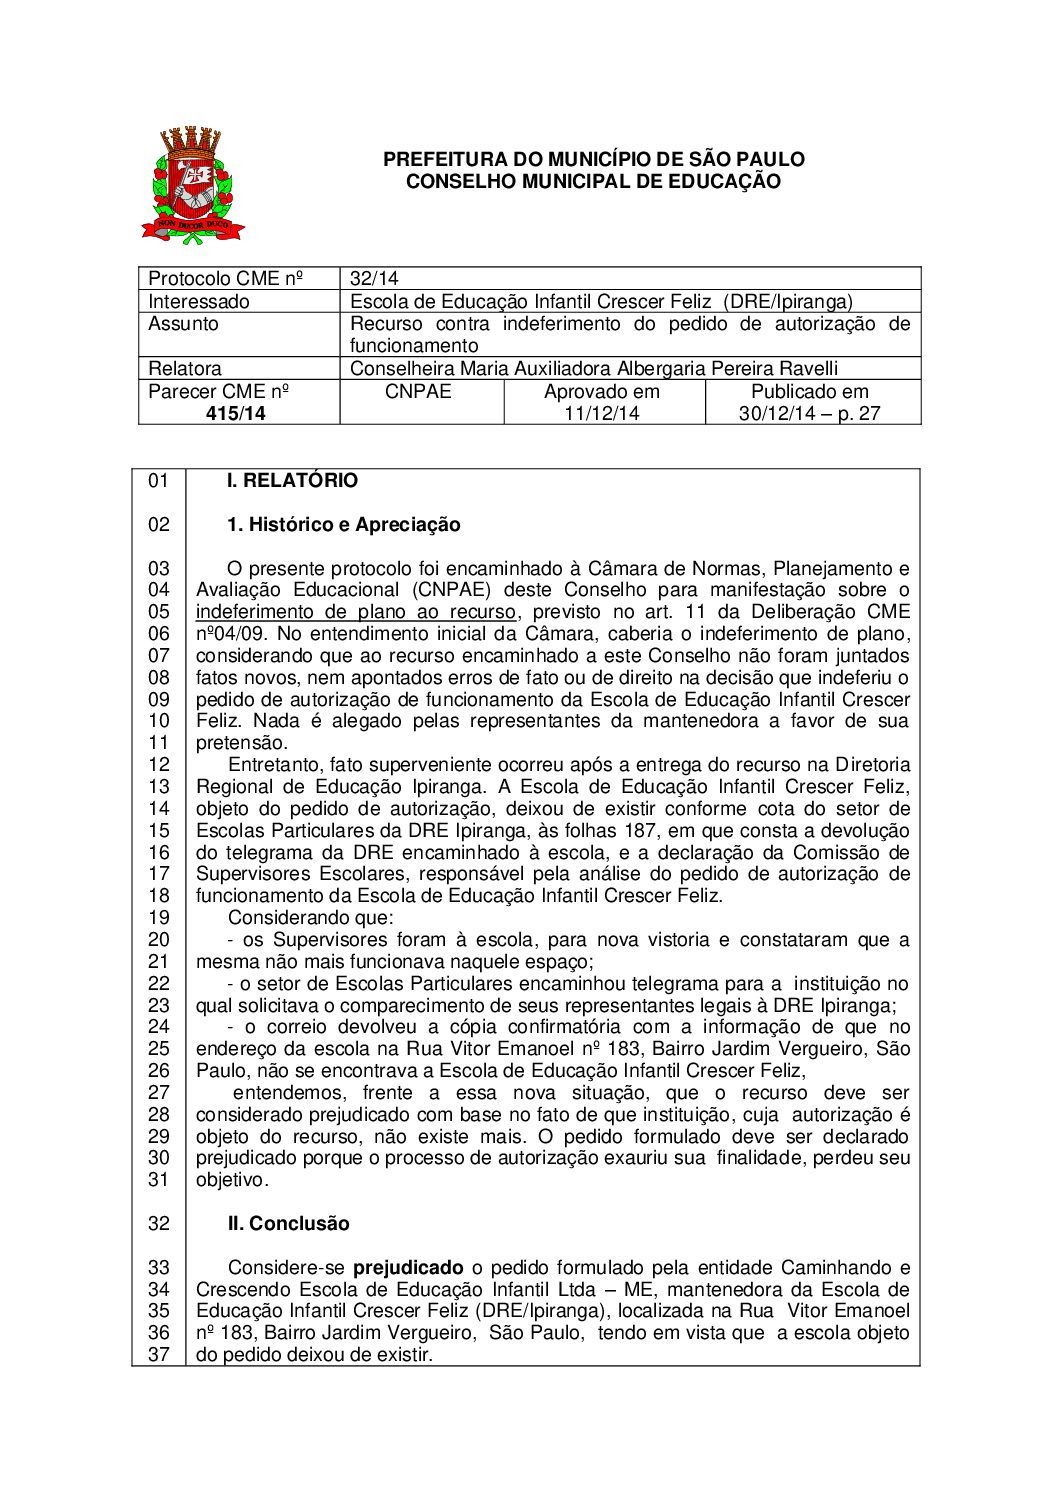 Parecer CME nº 415/2014 - Escola de Educação Infantil Crescer Feliz (DRE Ipiranga) - Recurso contra indeferimento do pedido de autorização de funcionamento 